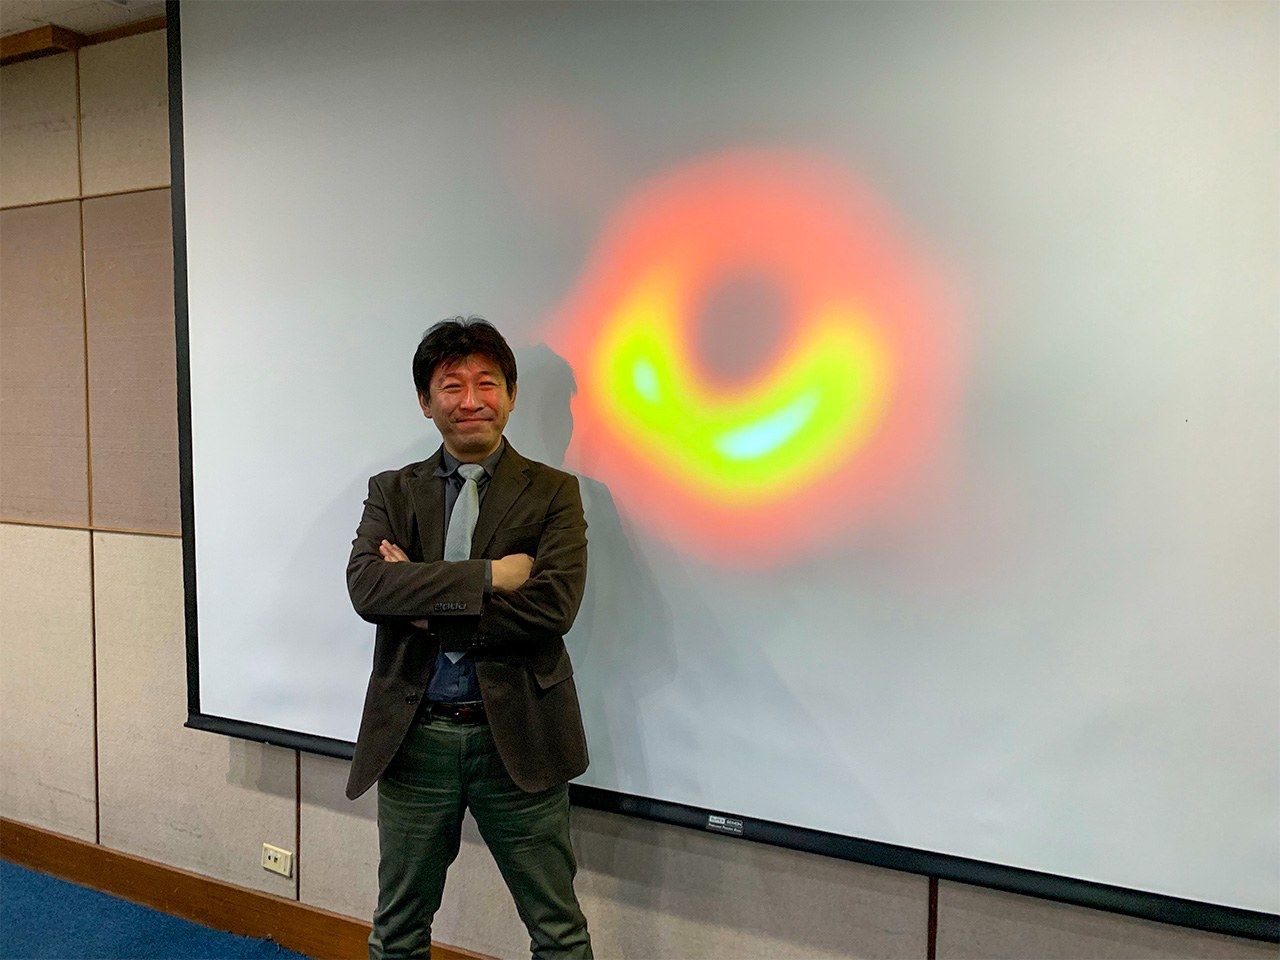 国際共同研究プロジェクトEHTが史上初めて撮影に成功したブラックホールの映像と並ぶ松下聡樹氏